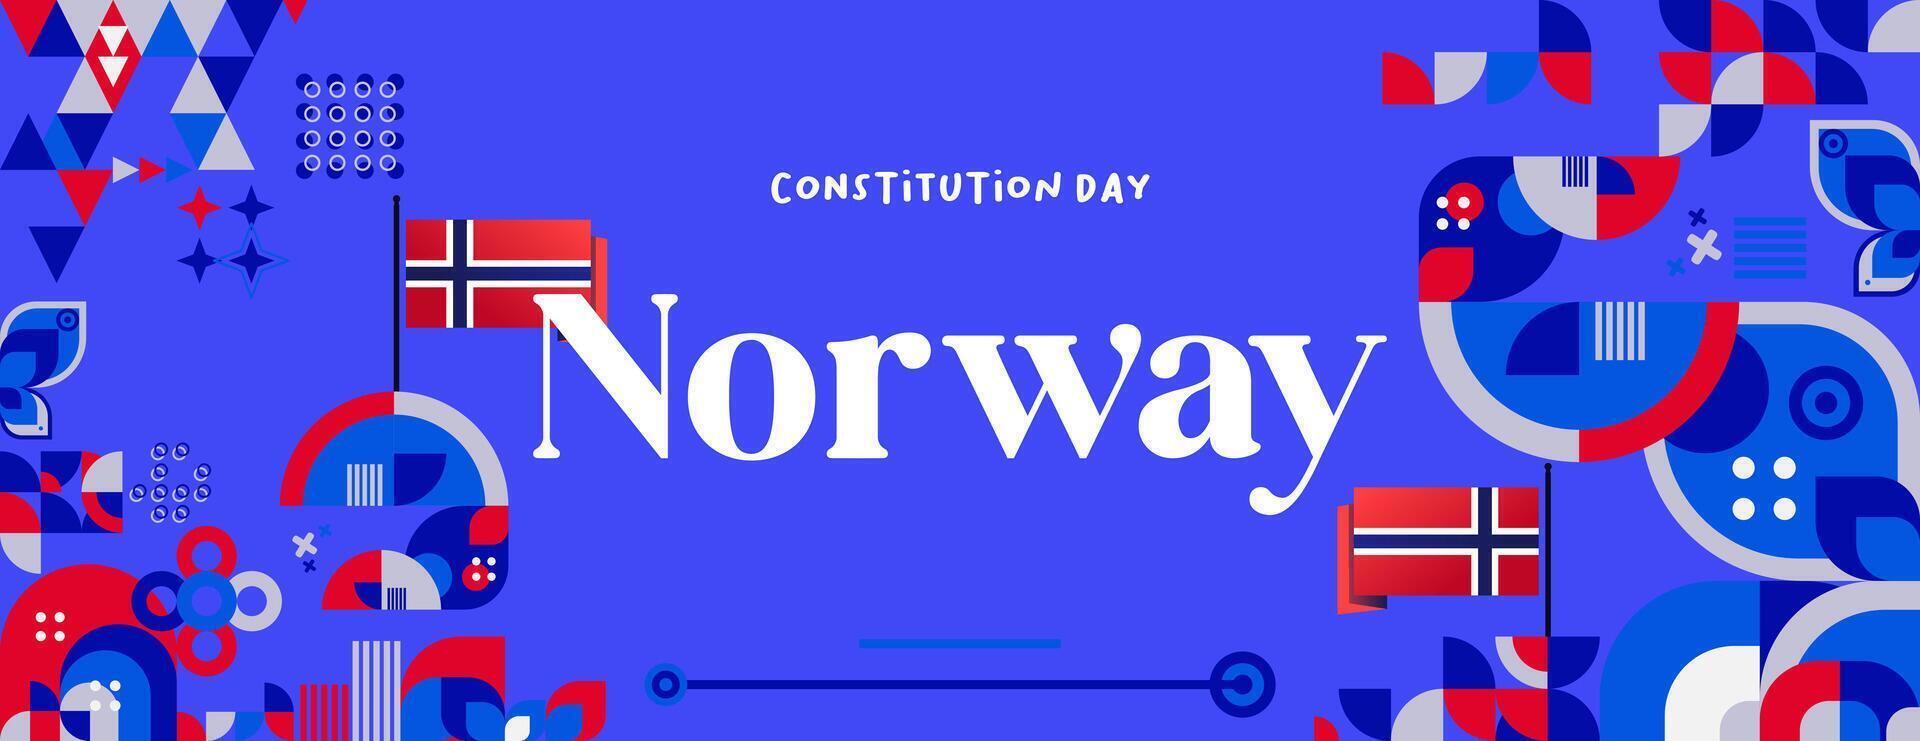 noruego constitución día bandera en vistoso moderno geométrico estilo. contento Noruega nacional independencia día saludo tarjeta cubrir con tipografía. vector ilustración para celebrando nacional Días festivos